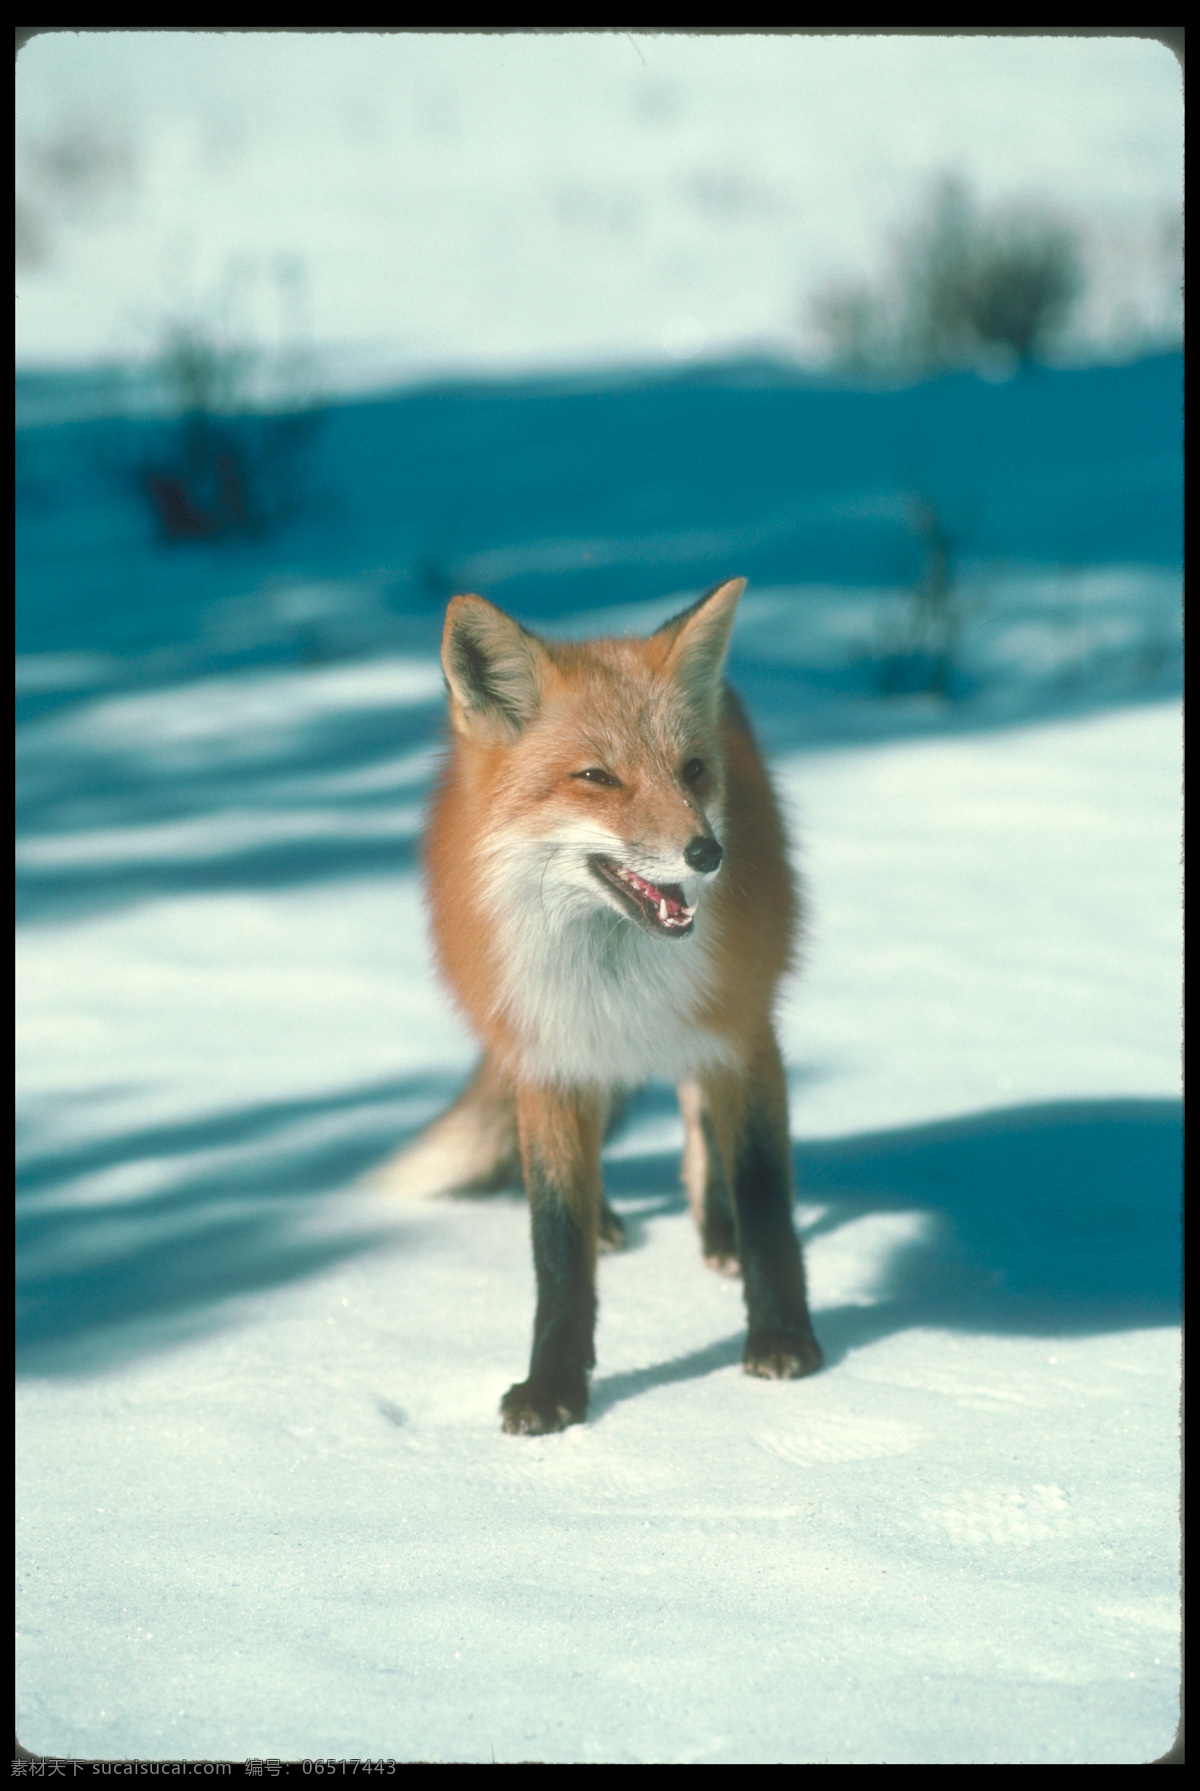 雪地 上 狐狸 狐狸摄影 野生动物 动物摄影 动物世界 陆地动物 生物世界